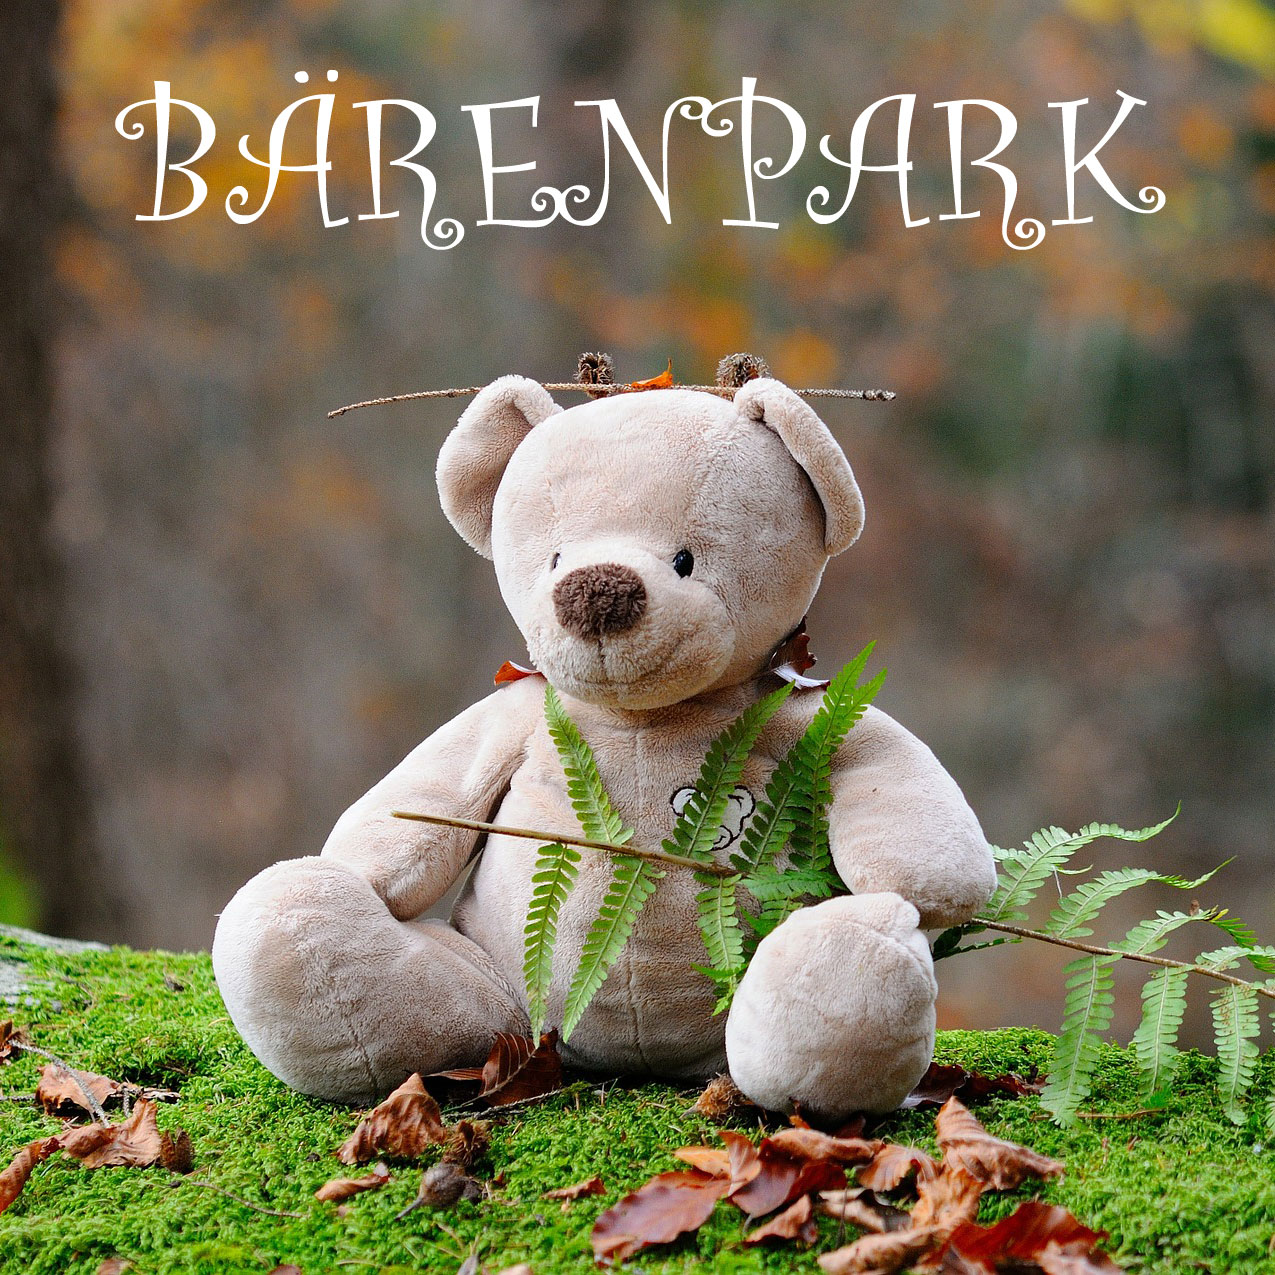 Lookout Verlag: Bärenpark von Phil Walker-Harding angekündigt